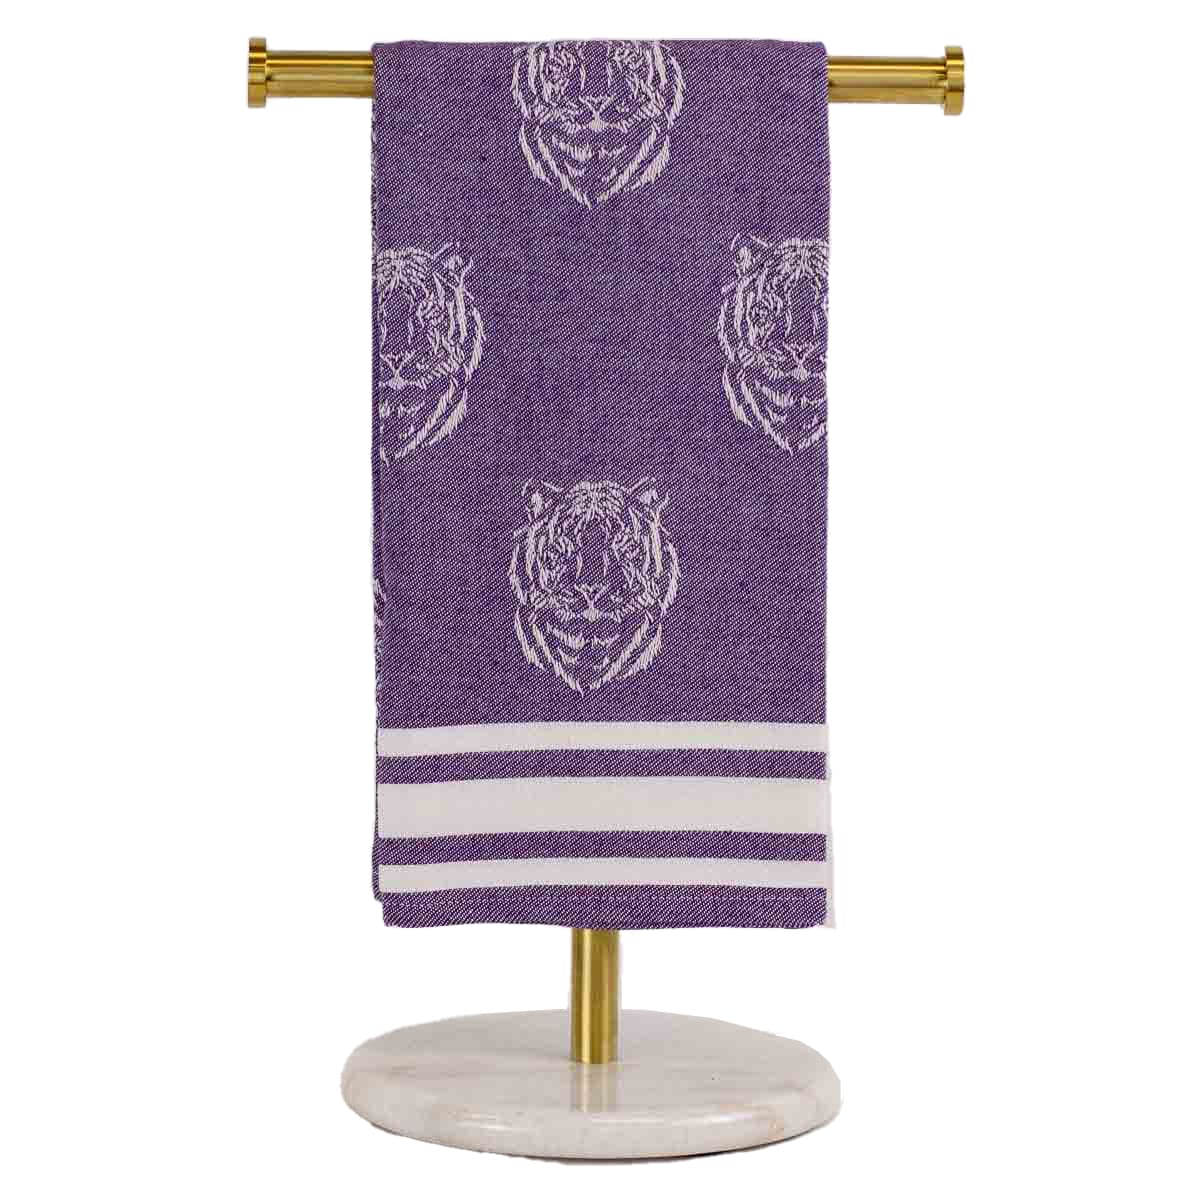 Tiger towels